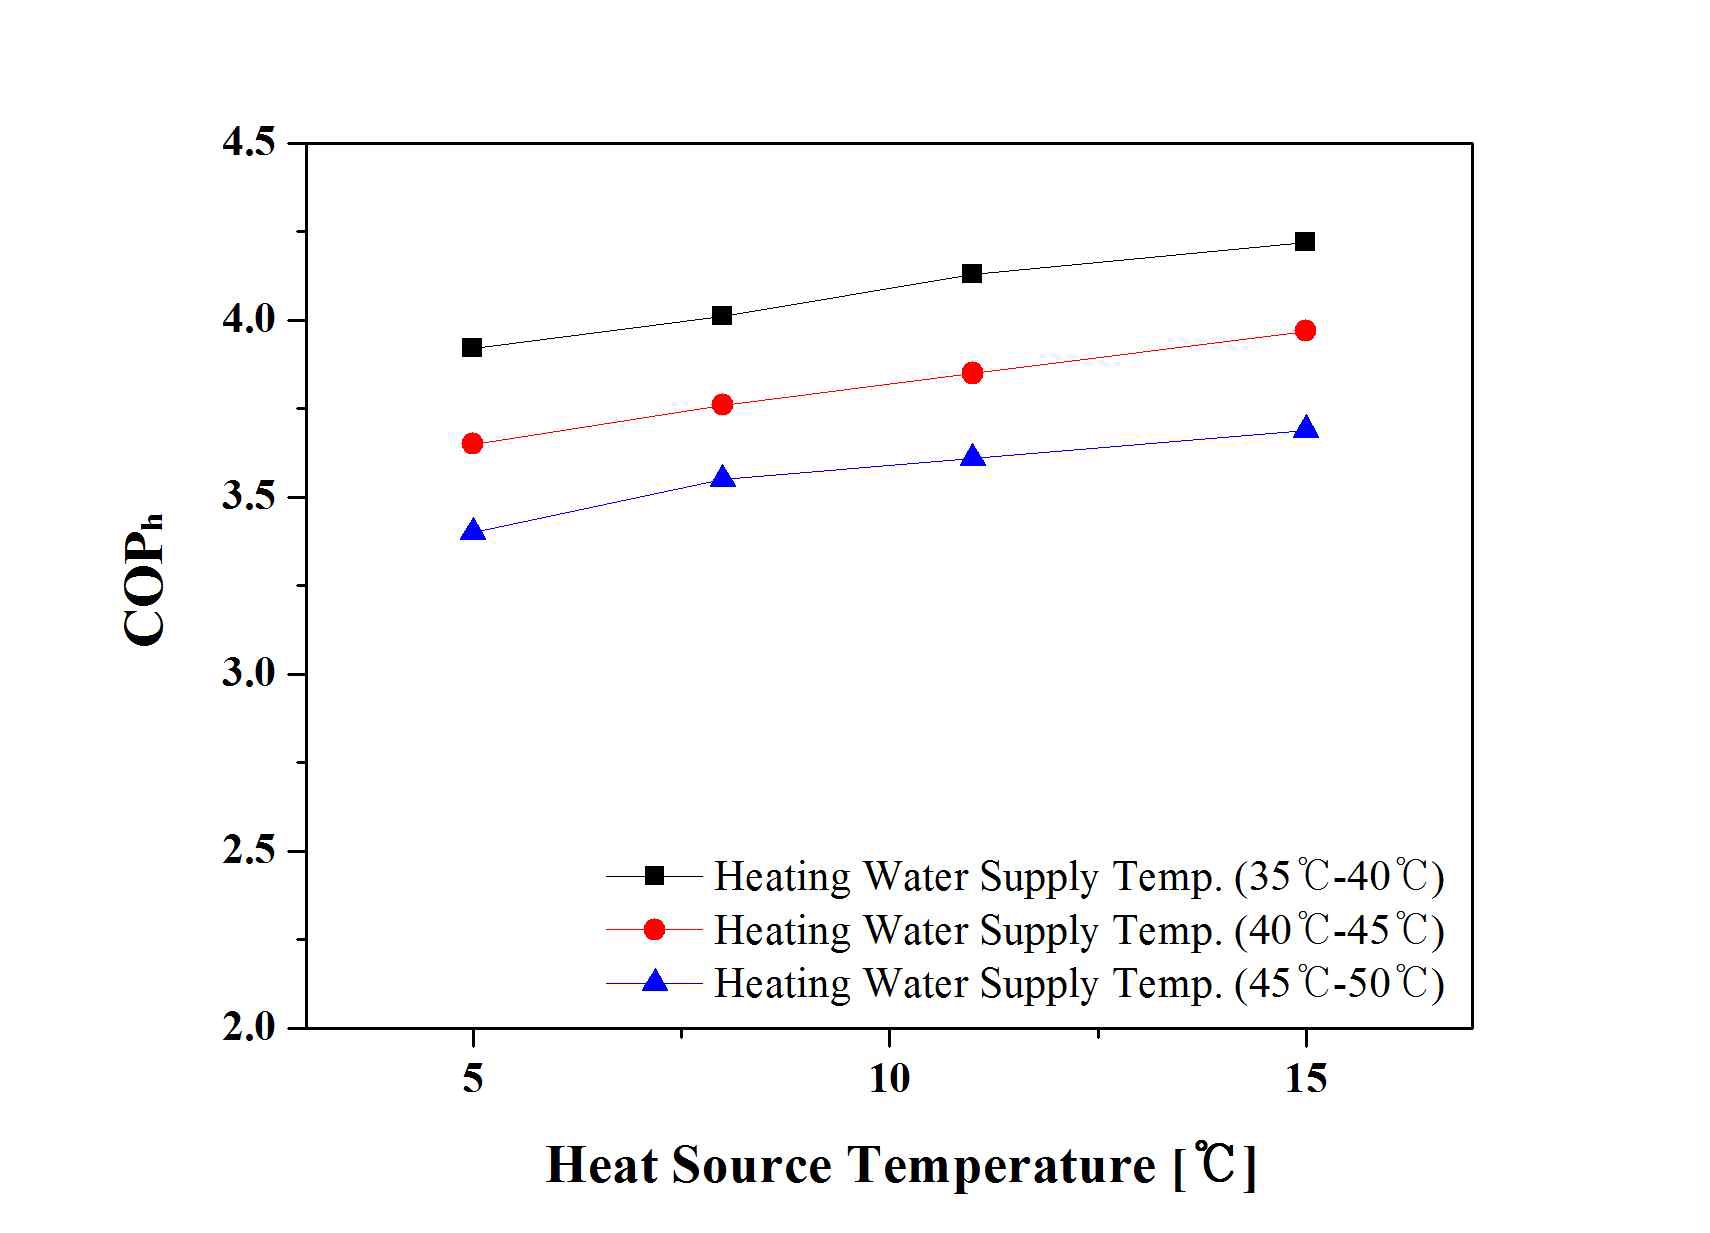 열원온도에 따른 난방COP의 변화